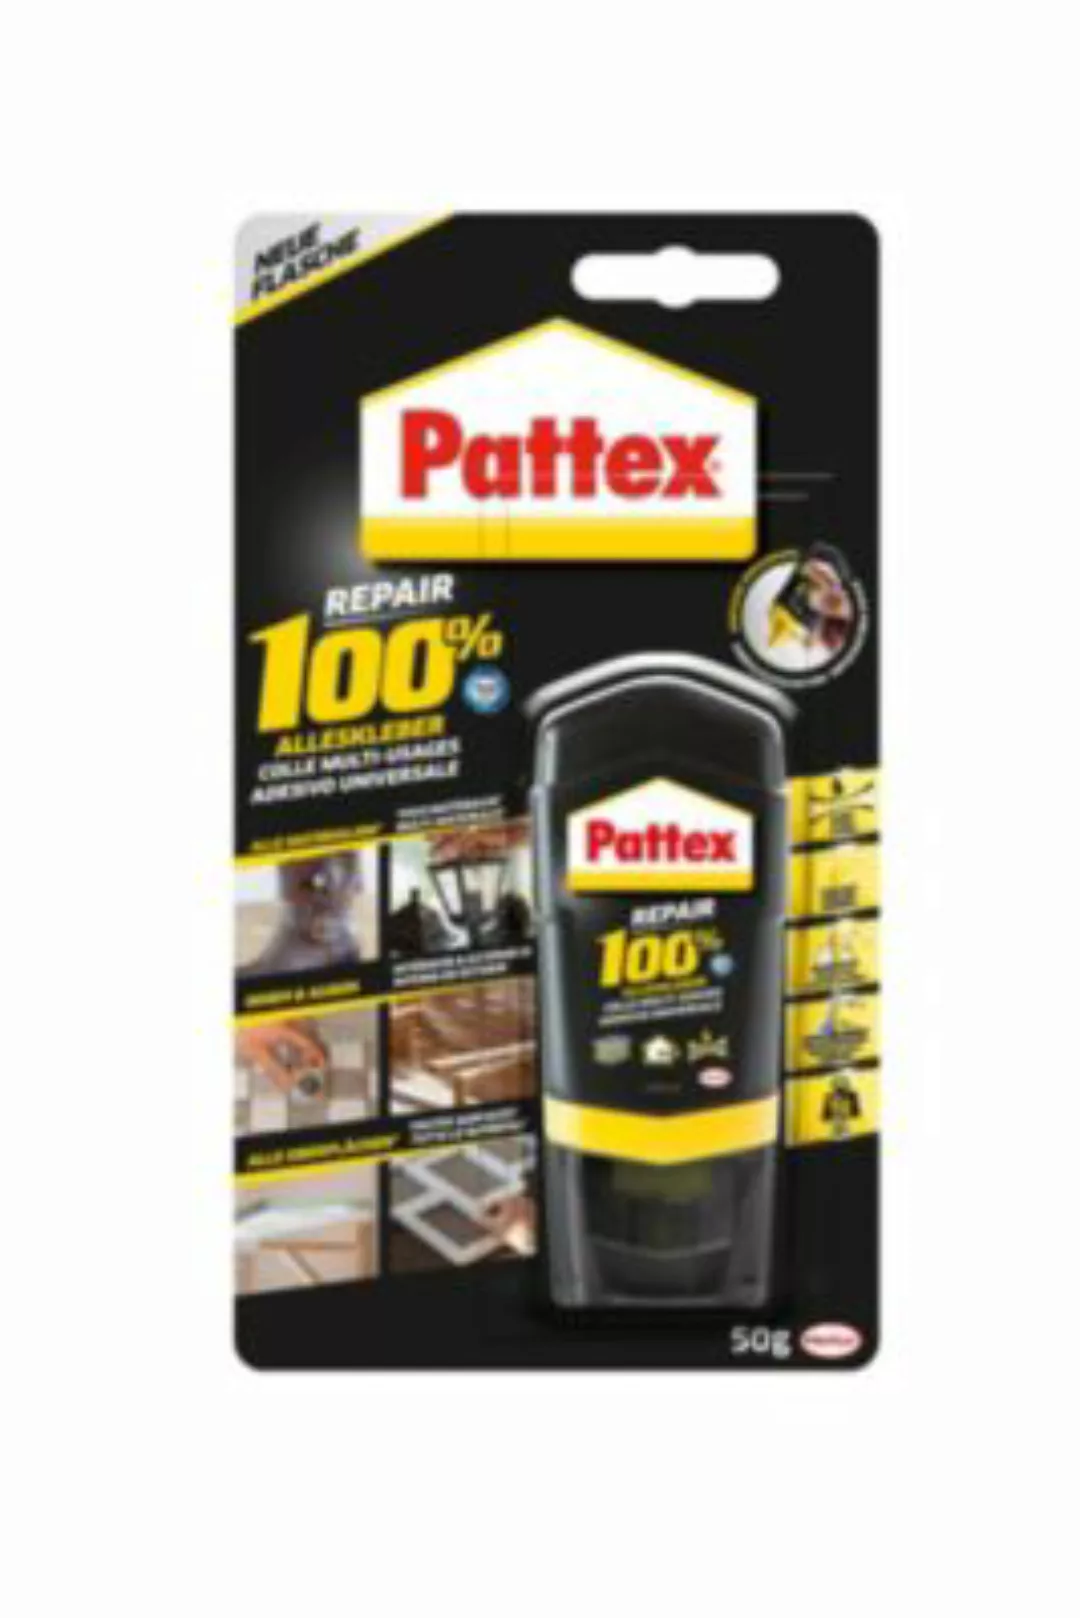 Pattex 100% Repair Alleskleber 50 g Blister Transparent günstig online kaufen